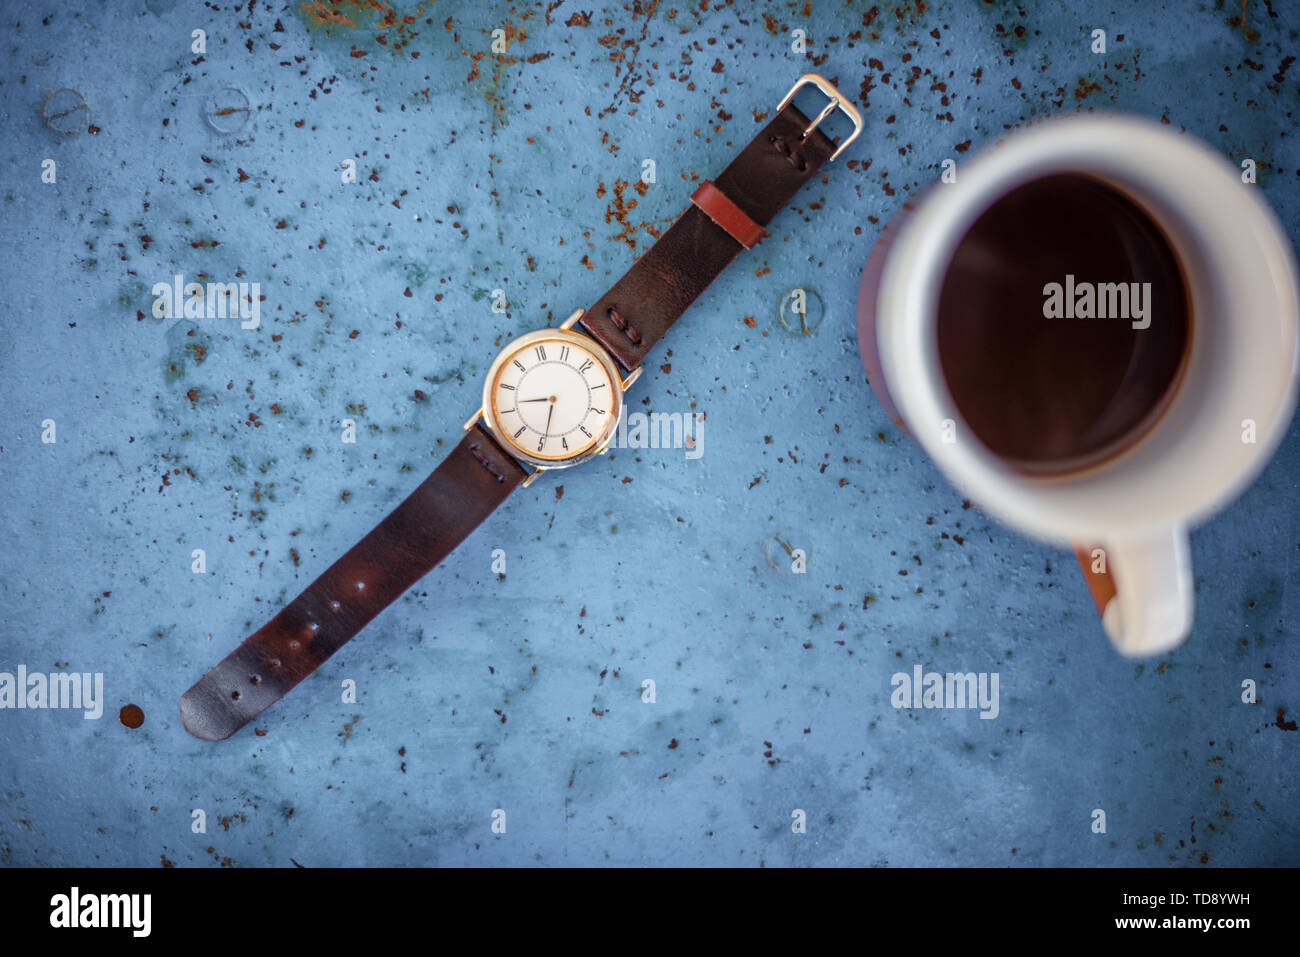 Vintage Armbanduhr auf rustikalen blau Metall Bank schlägt die Zeit ist 07.00 Uhr, eine Tasse Kaffee in der Kante des Rahmens. Stockfoto